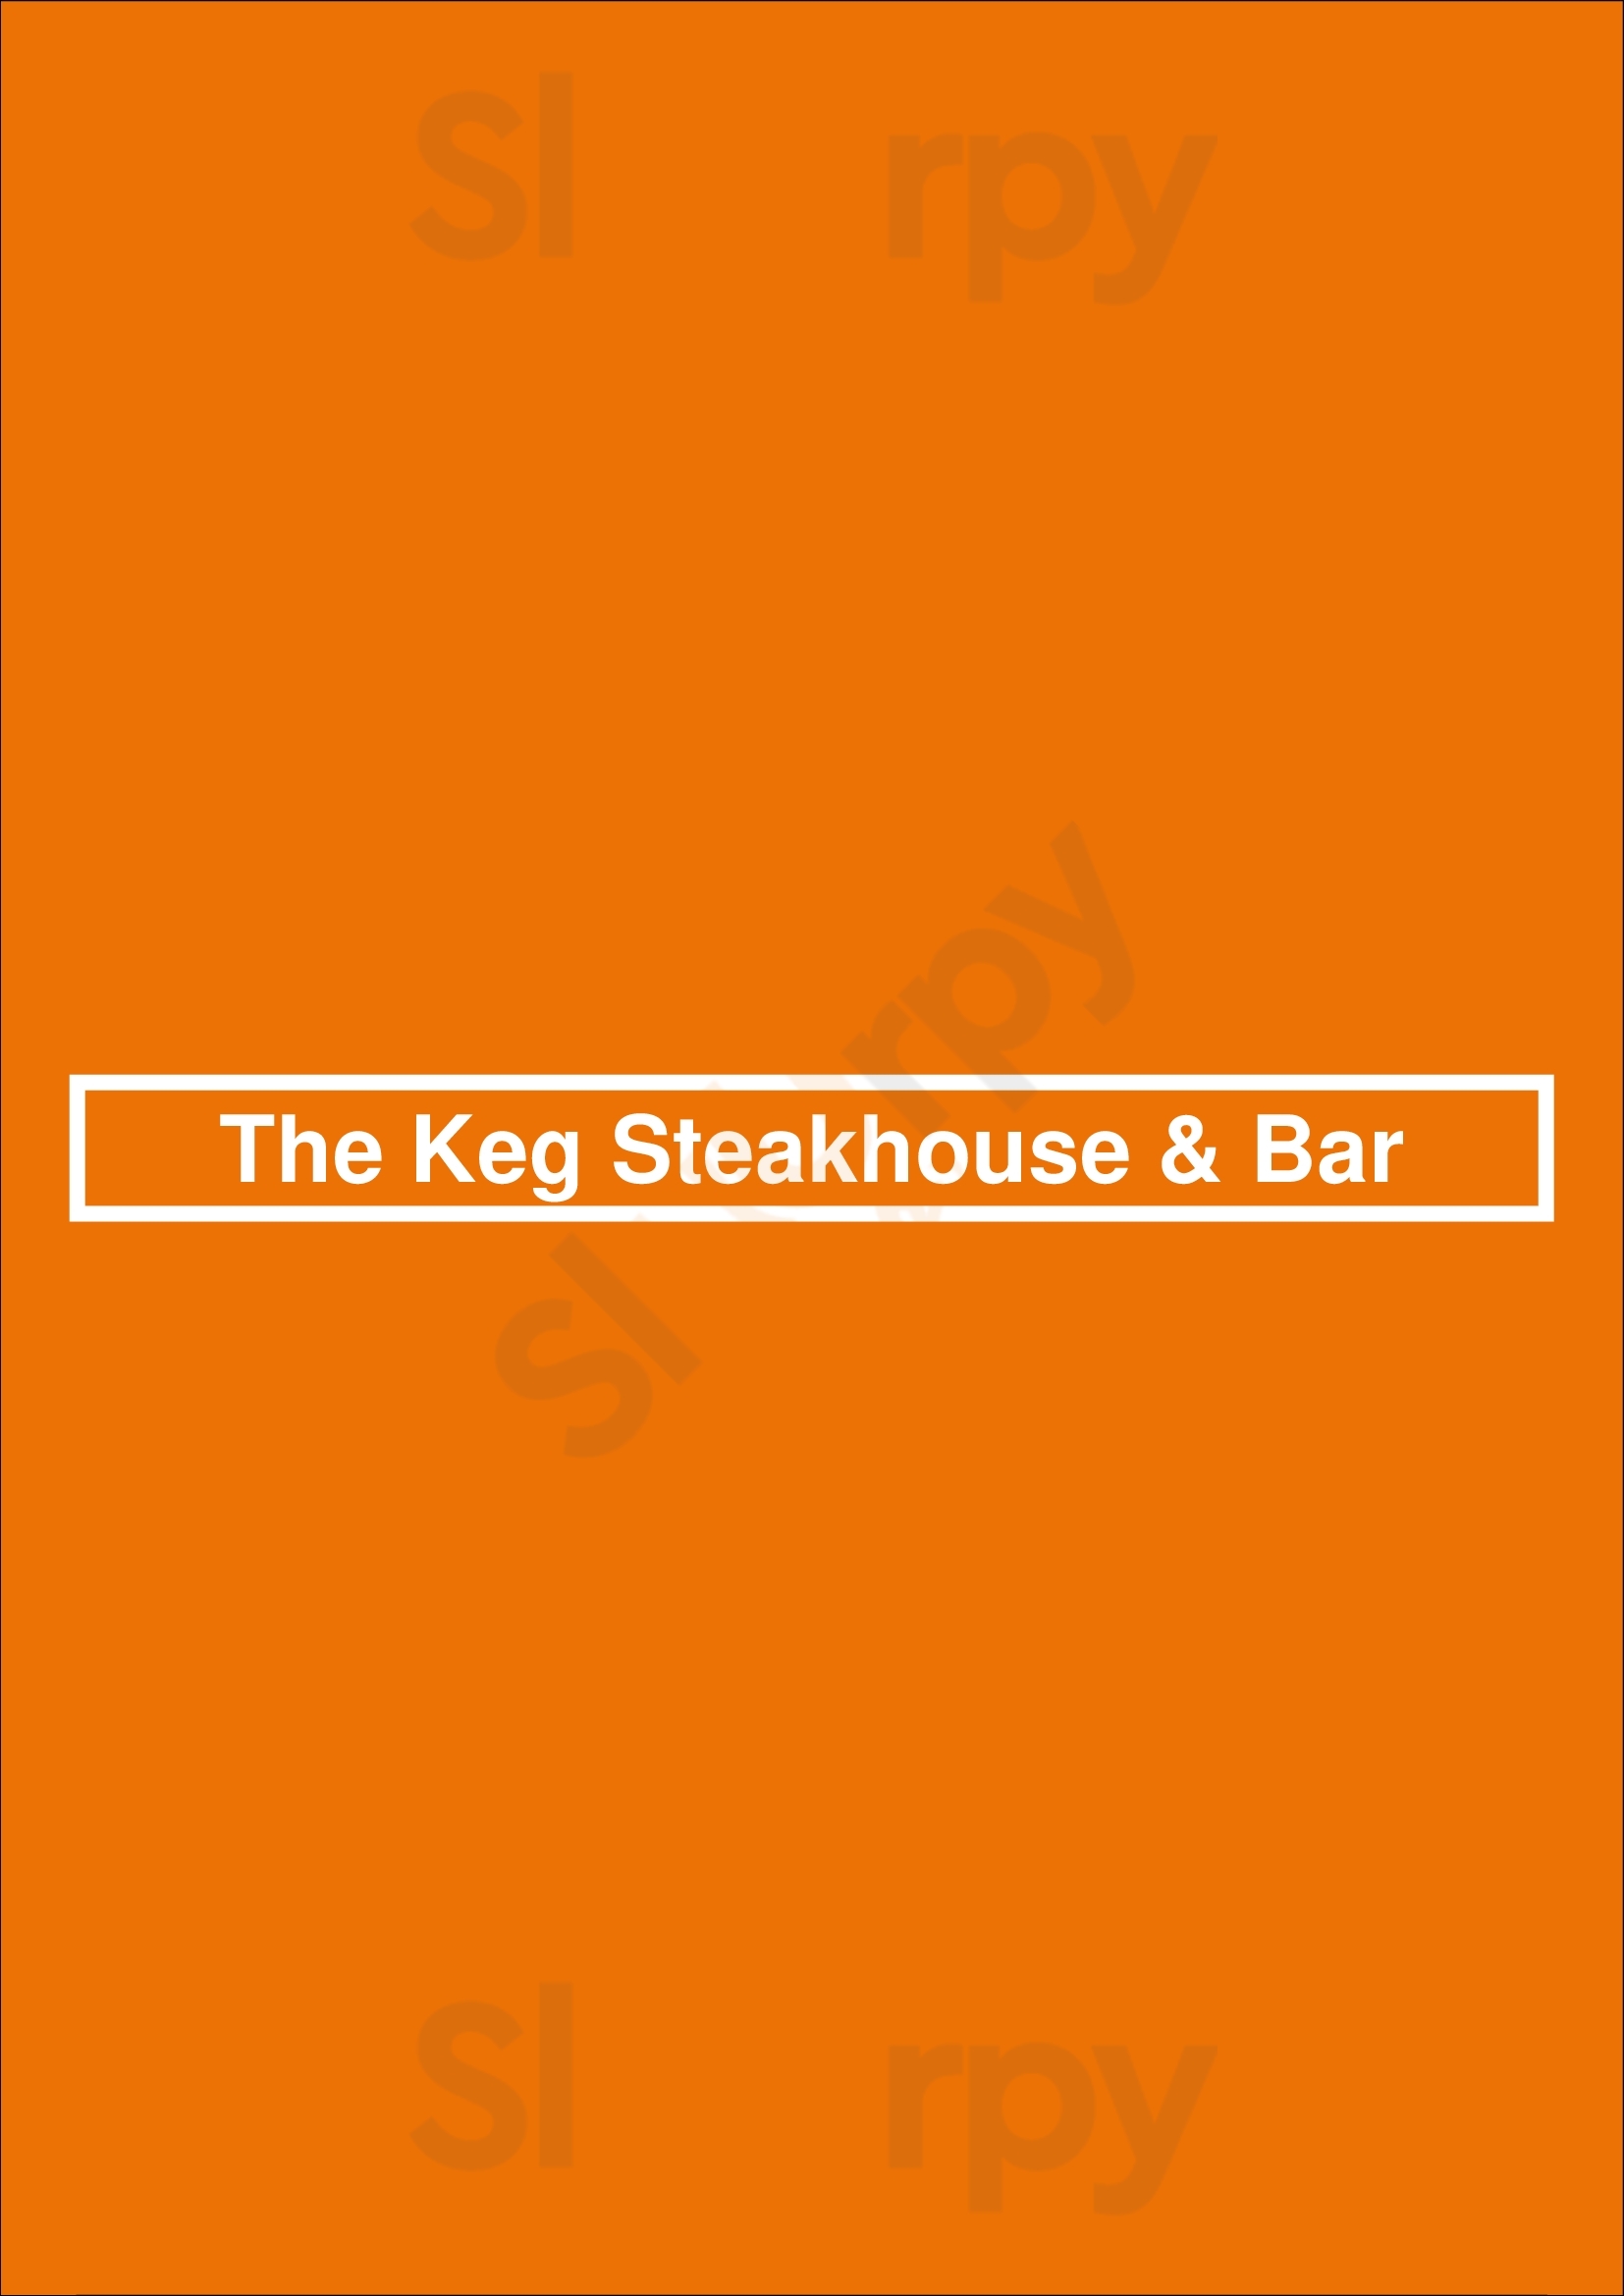 The Keg Steakhouse + Bar - Brampton Brampton Menu - 1